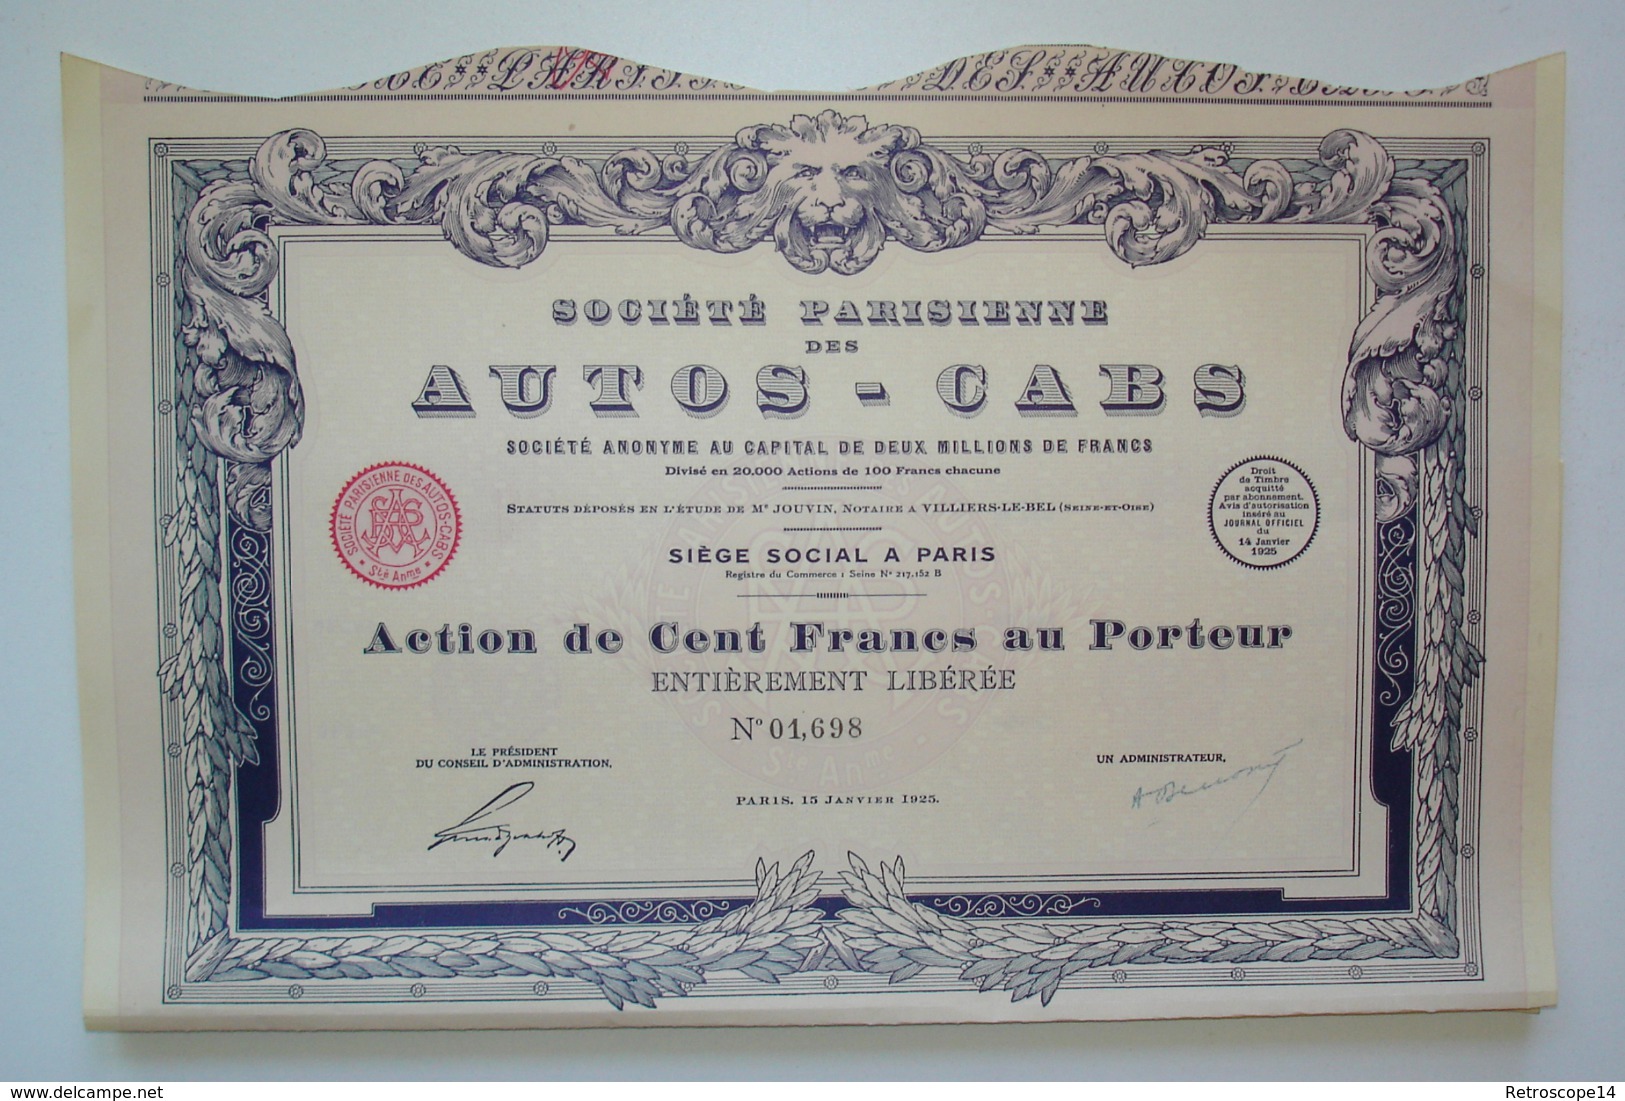 RARE. 1925. SOCIÉTÉ DES AUTOS-CABS Avec Coupons. ART DÉCO. - Cars